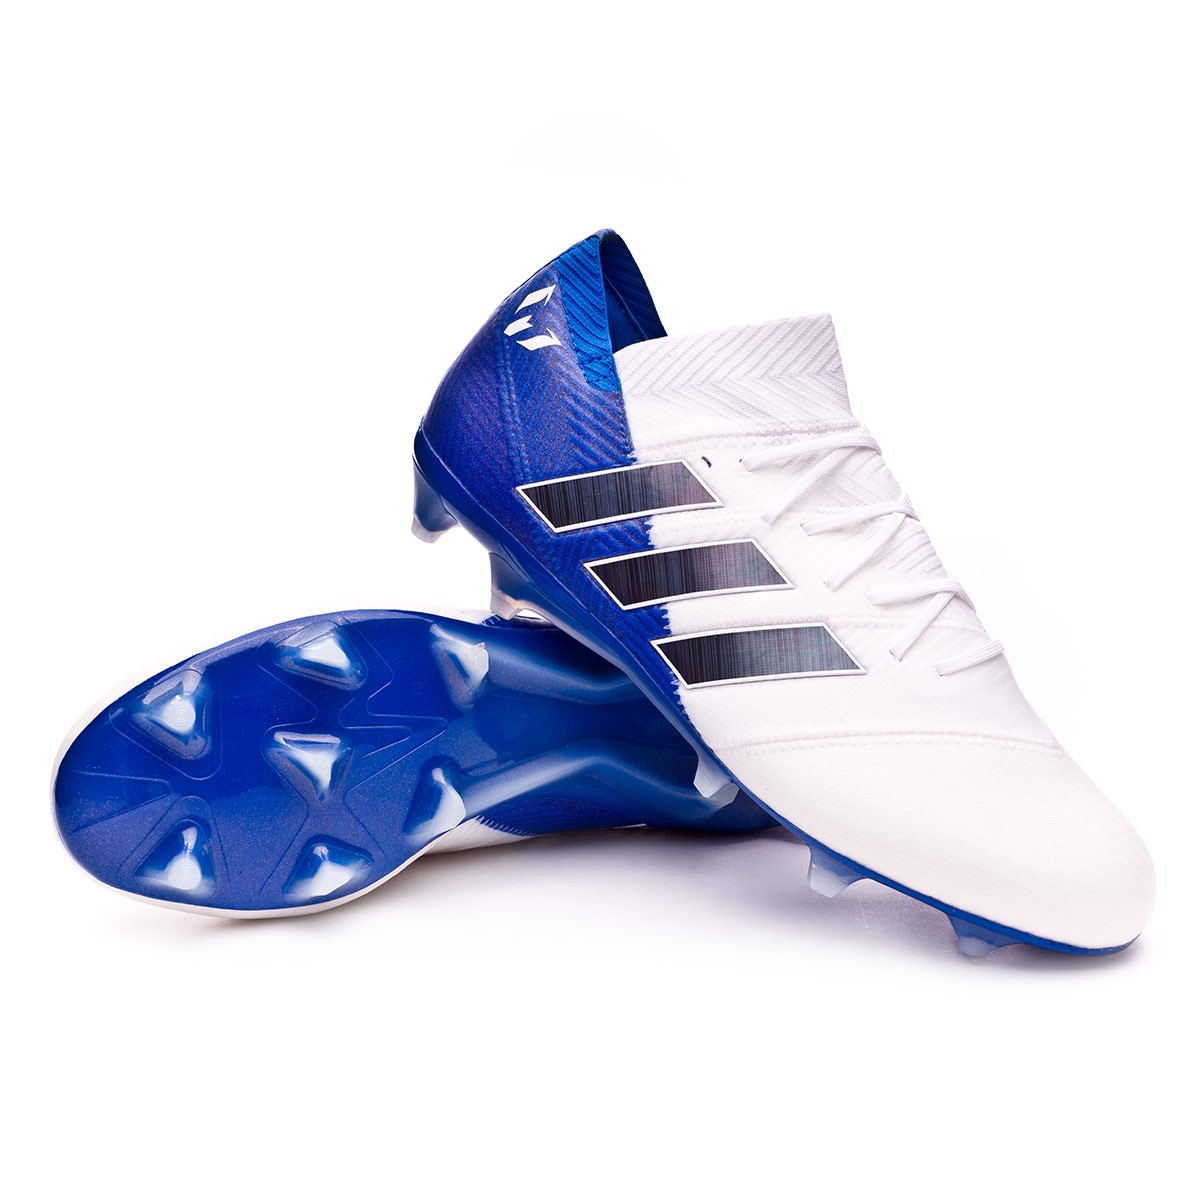 adidas nemeziz 18.1 fg football boots